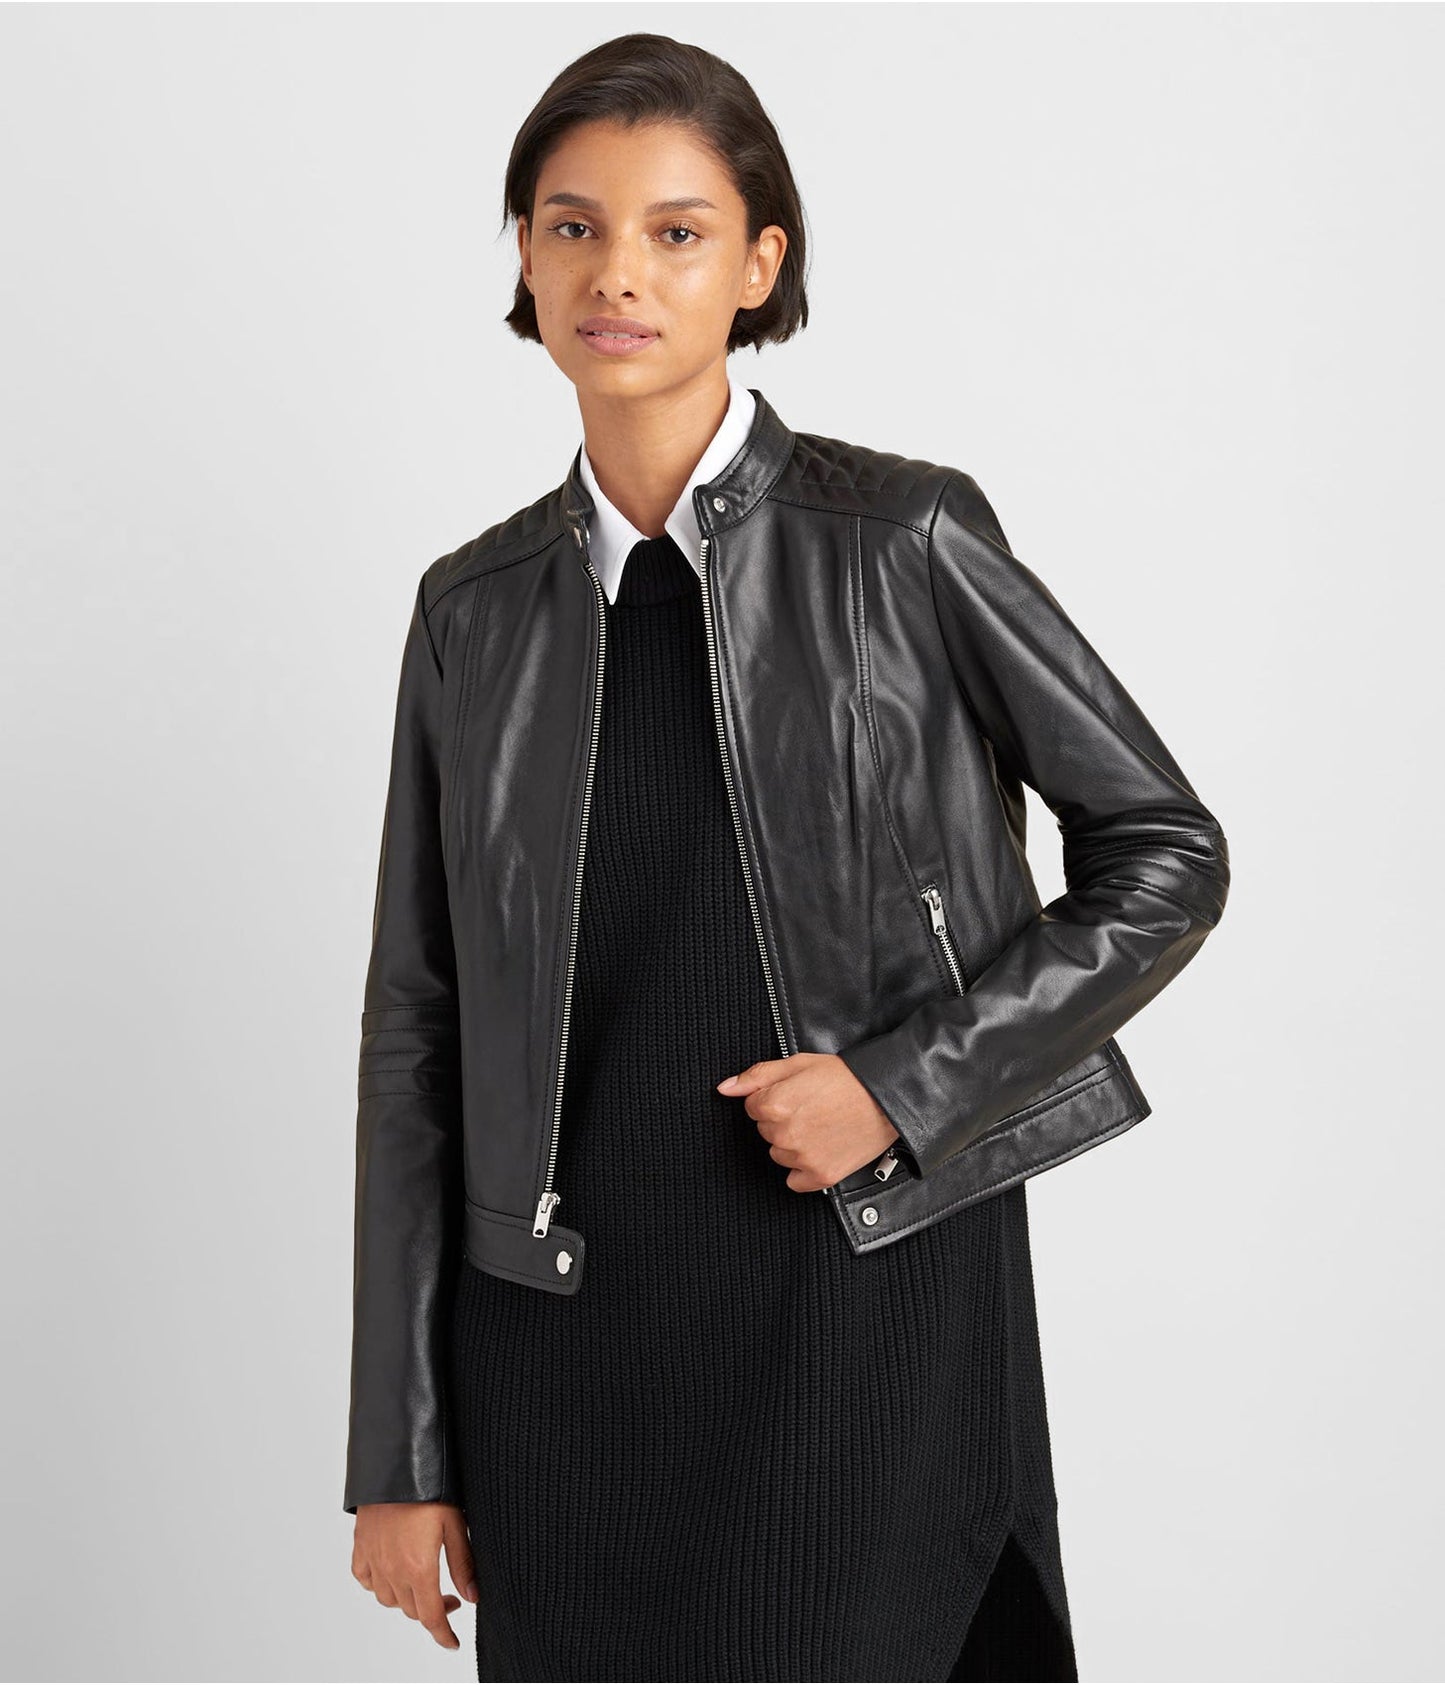 Women's Leather Biker Jacket In Black